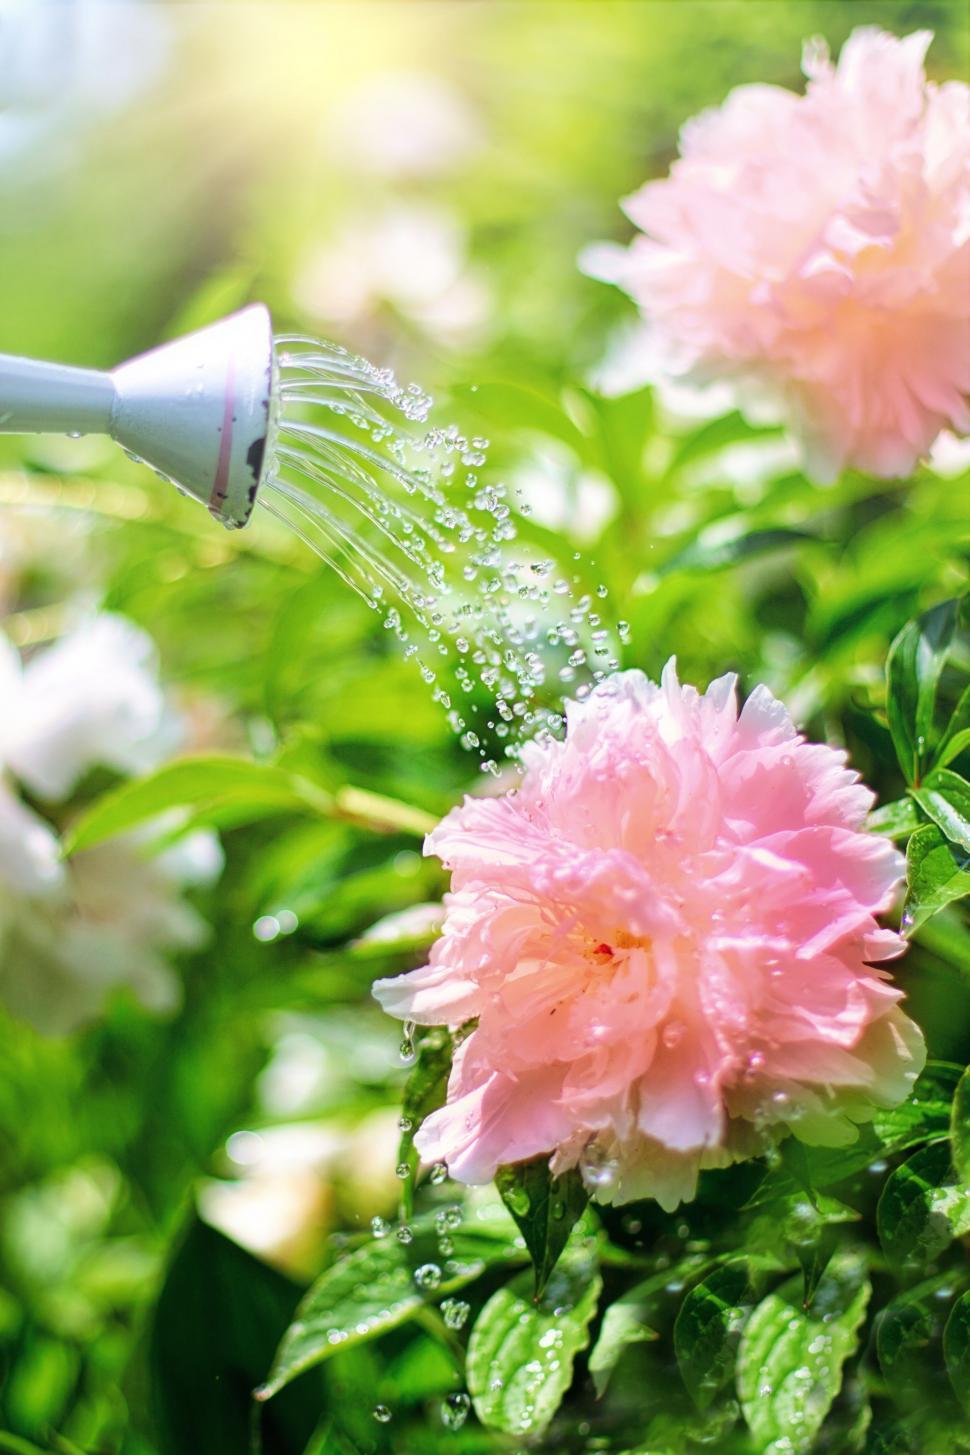 Free Image of Watering Flowers  